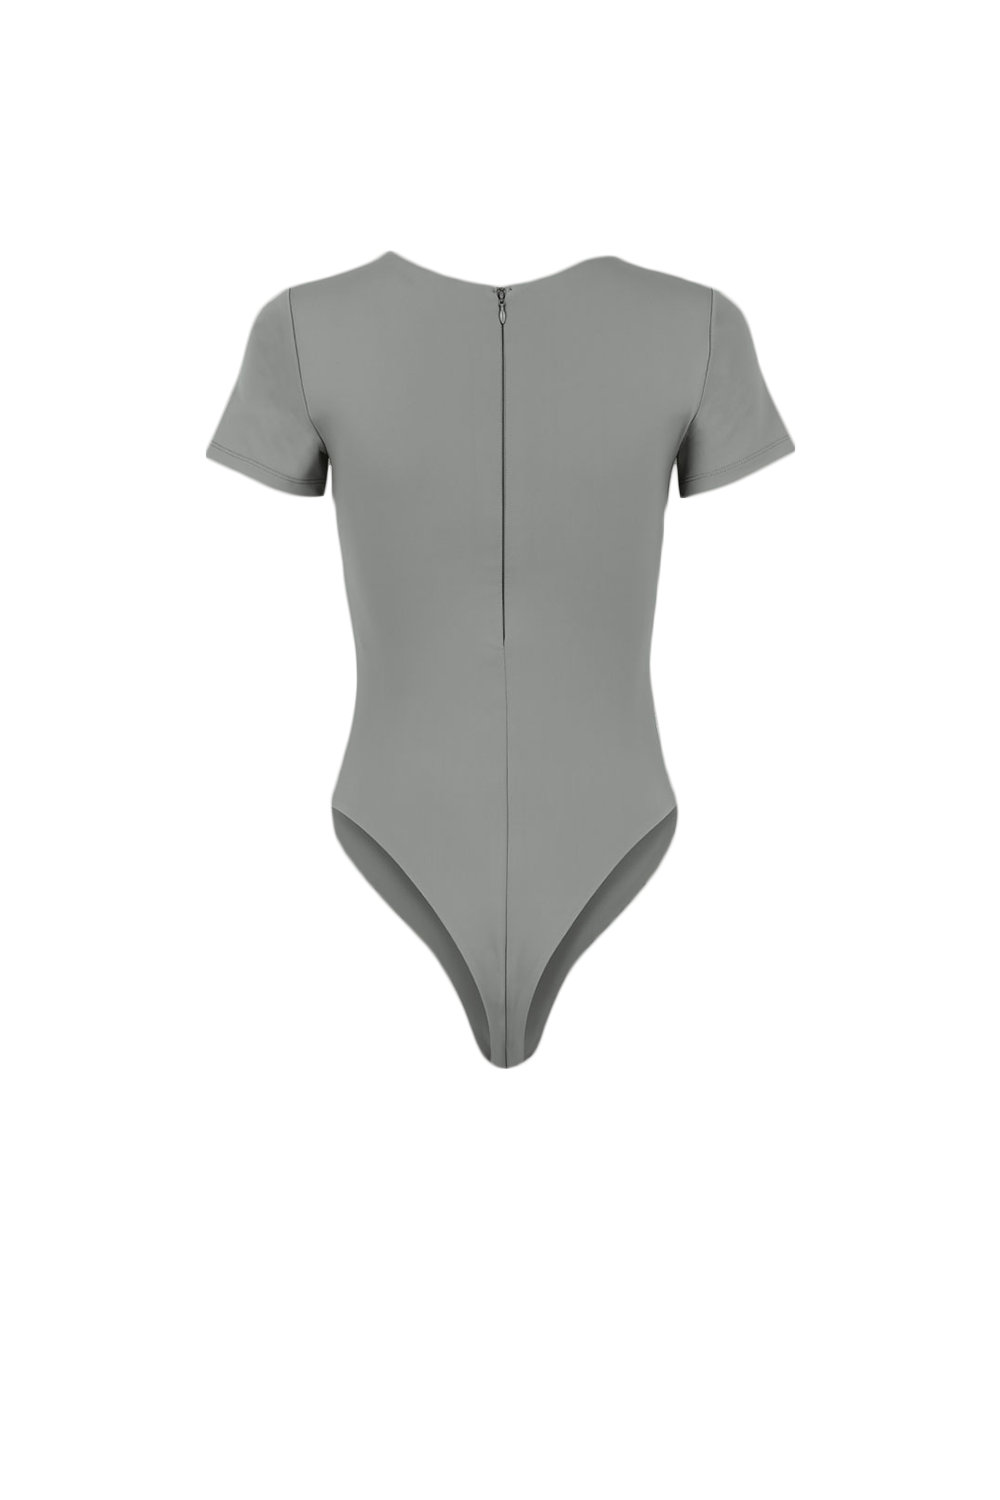 ENTIRE STUDIOS - Tee Bodysuit | Rhino